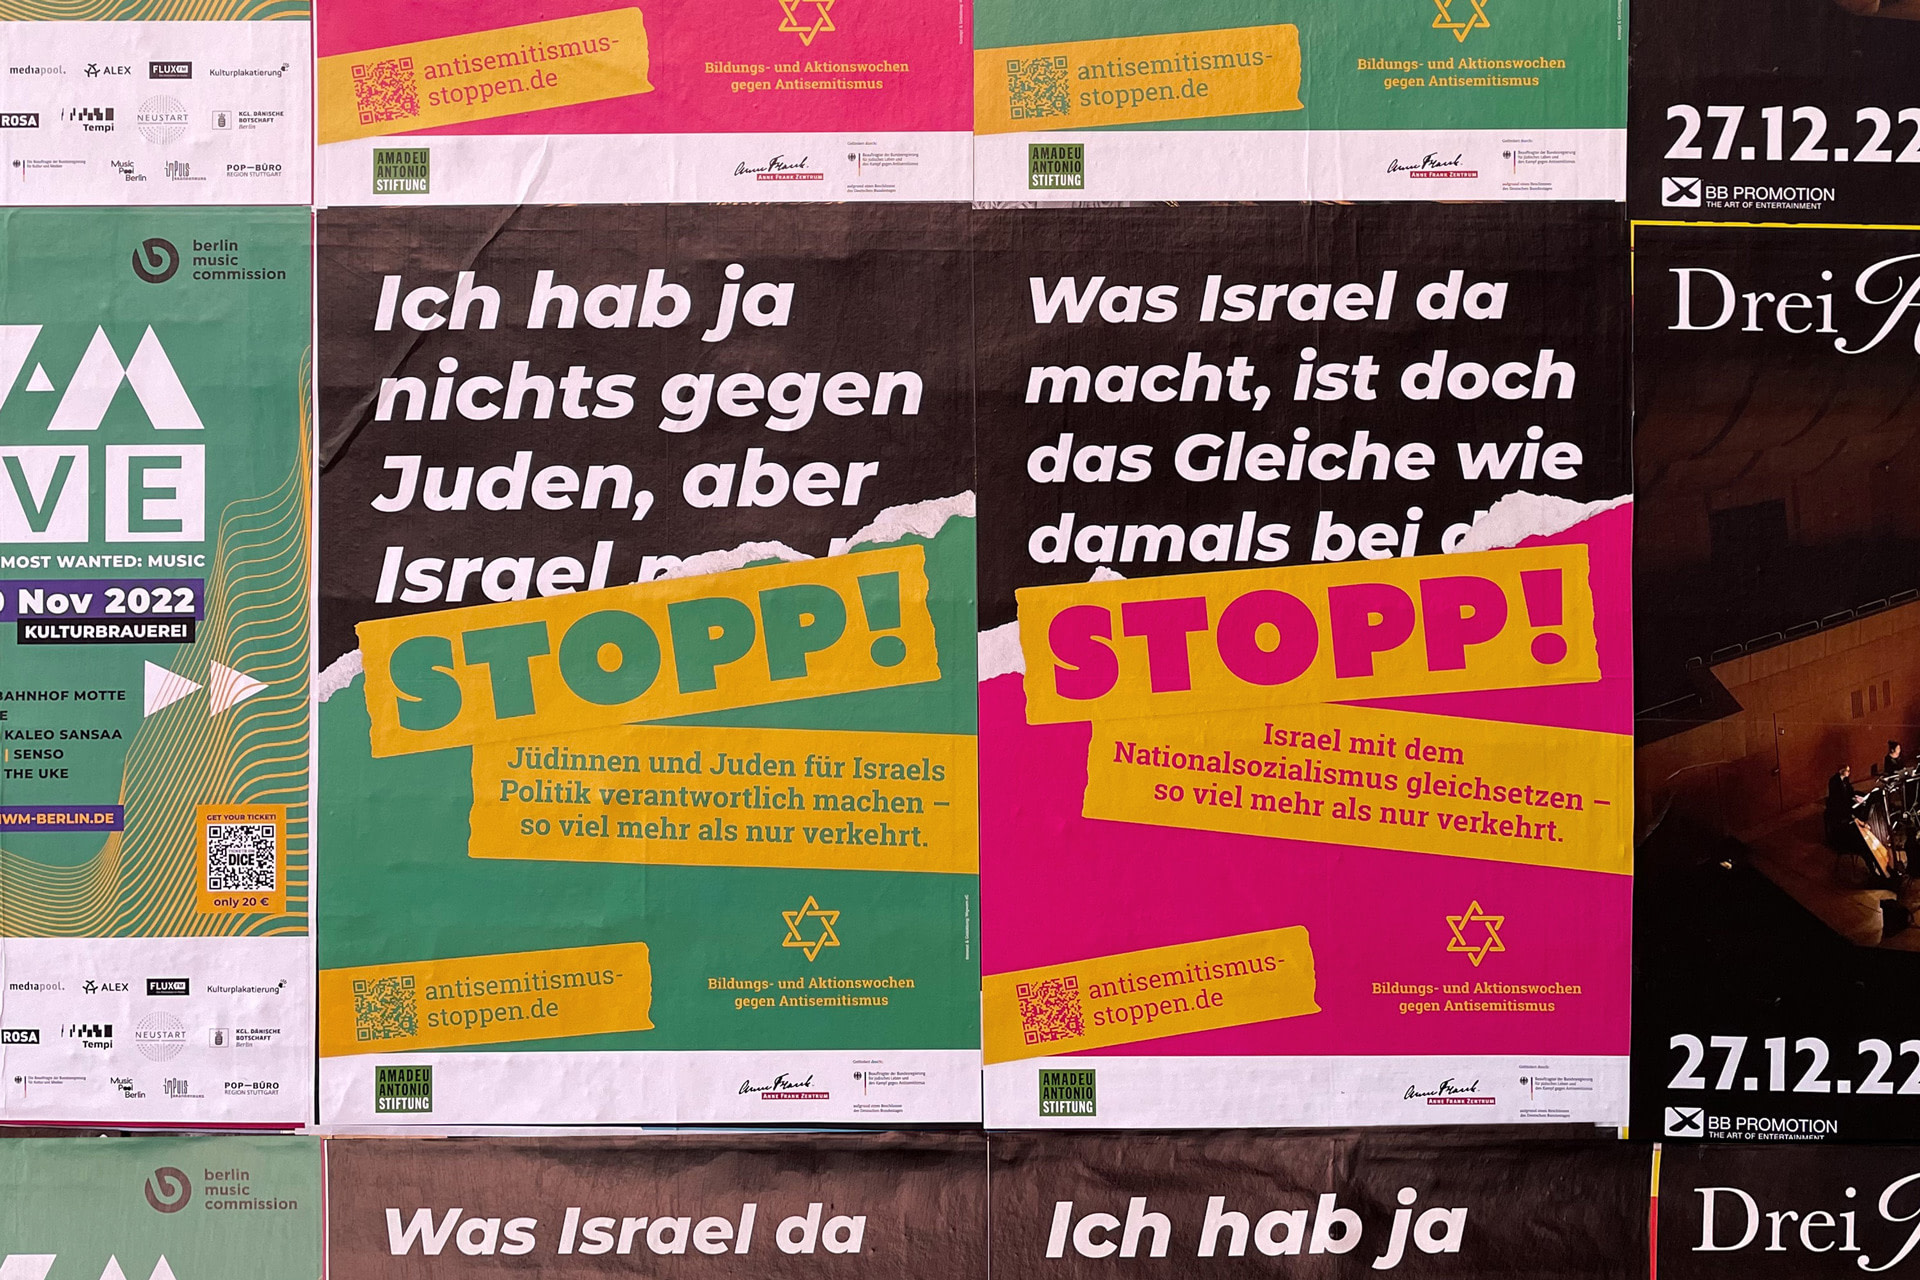 Plakatwand in Berlin, im Fokus sind zwei Plakate der Kampagne für die Aktionswochen gegen Antisemitismus 2022